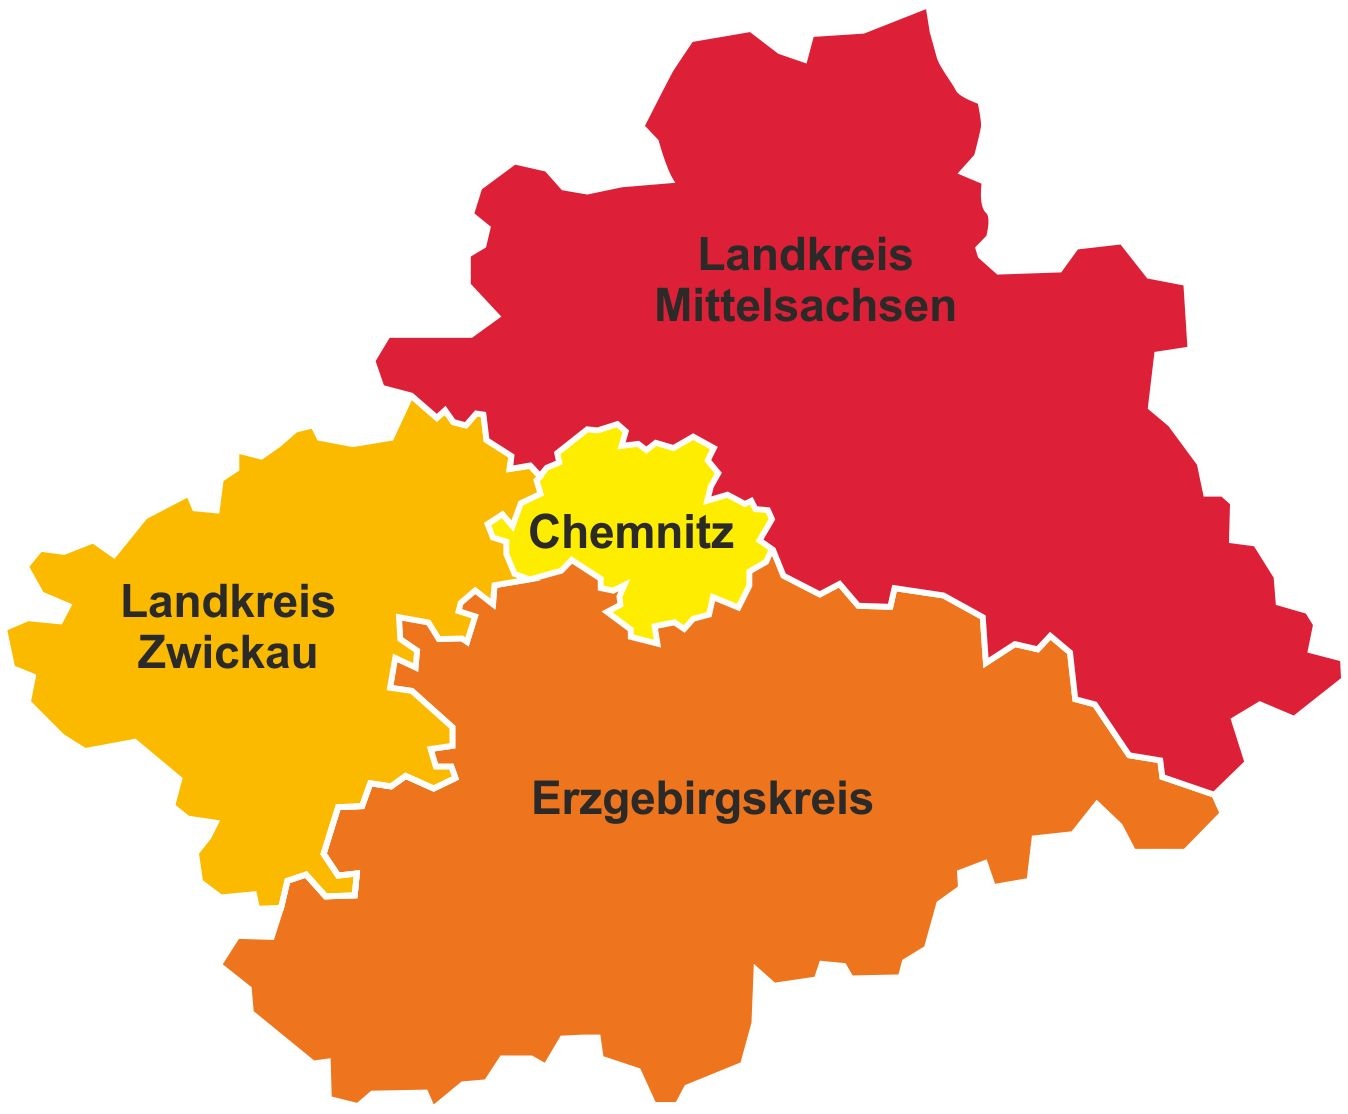 Abbildung des Verbundsgebietes Chemnitz, Erzgebirgskries, Landkreis Mittelsachsen, Landkreis Zwickau